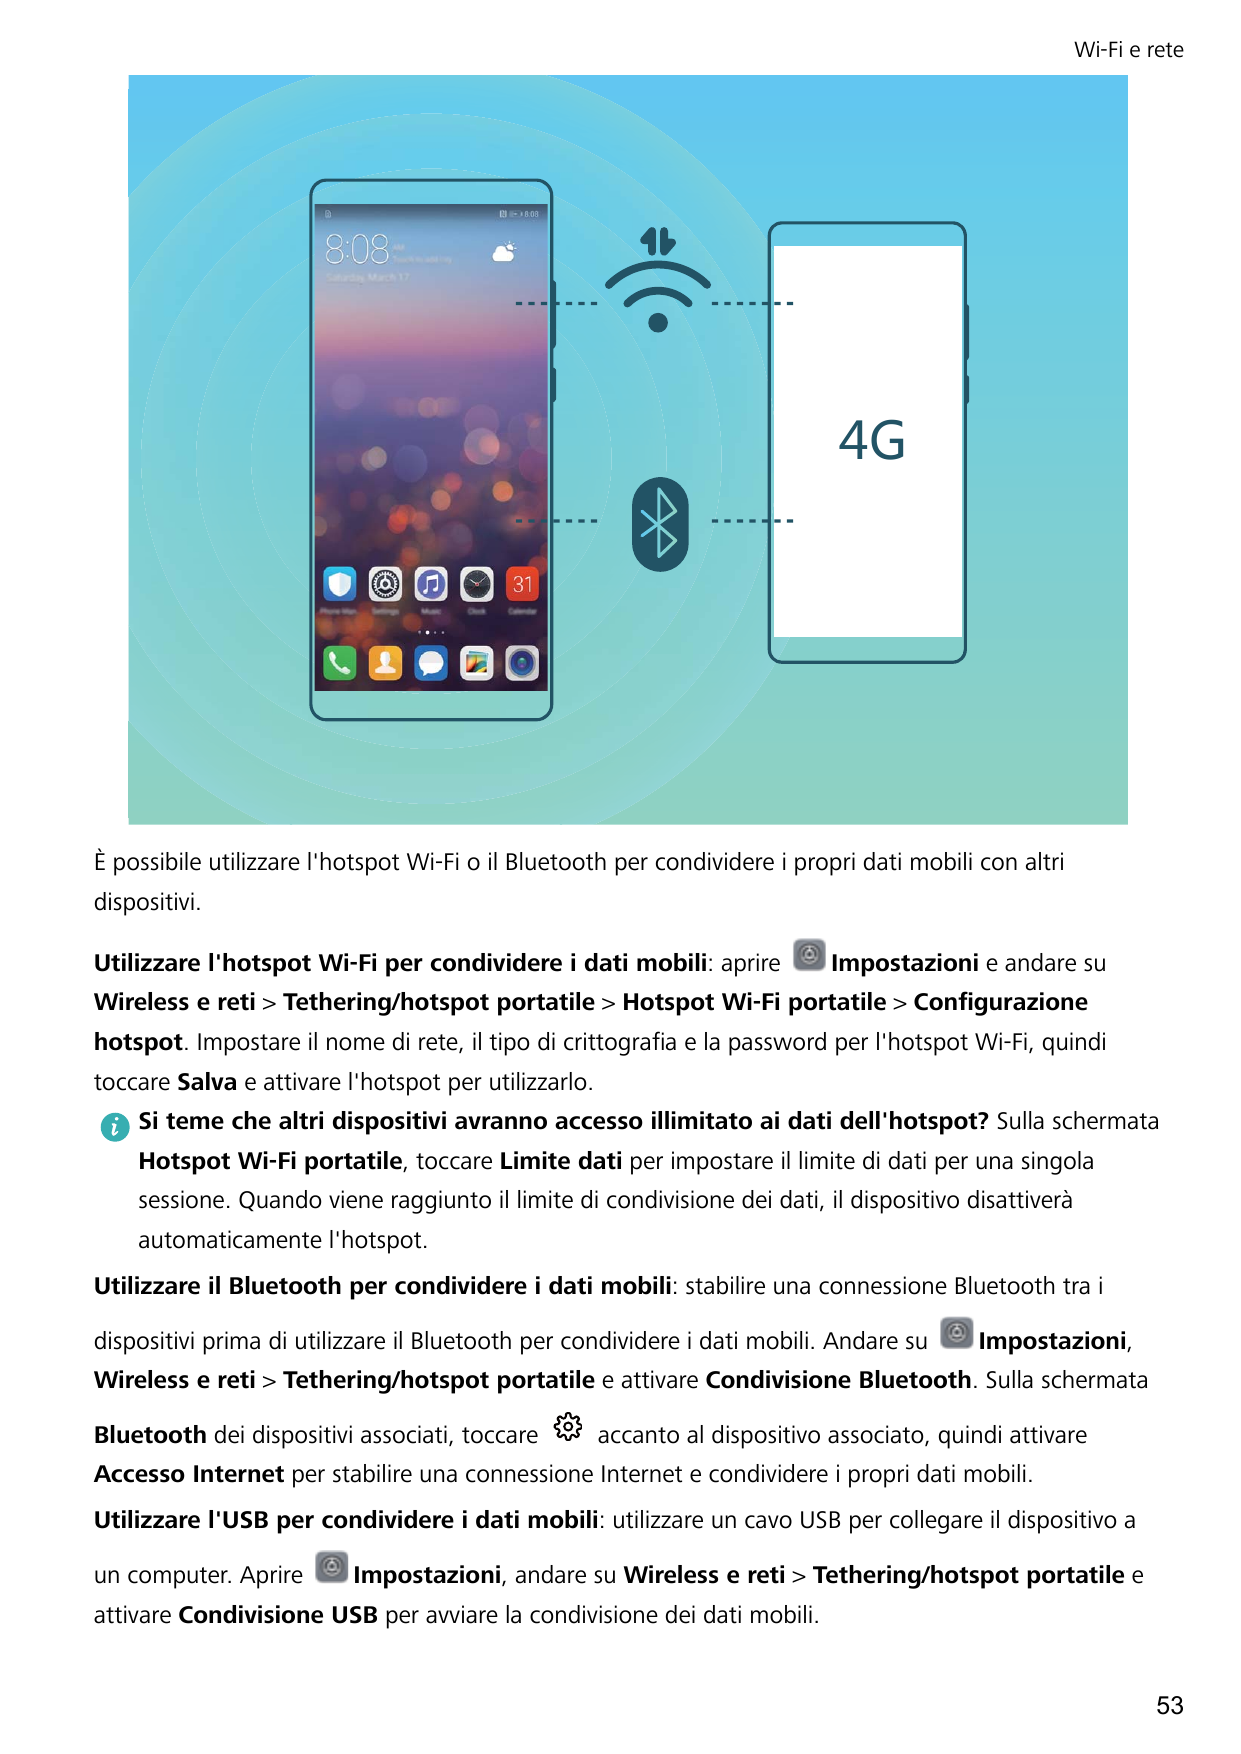 Wi-Fi e rete-È possibile utilizzare l'hotspot Wi-Fi o il Bluetooth per condividere i propri dati mobili con altridispositivi.Uti